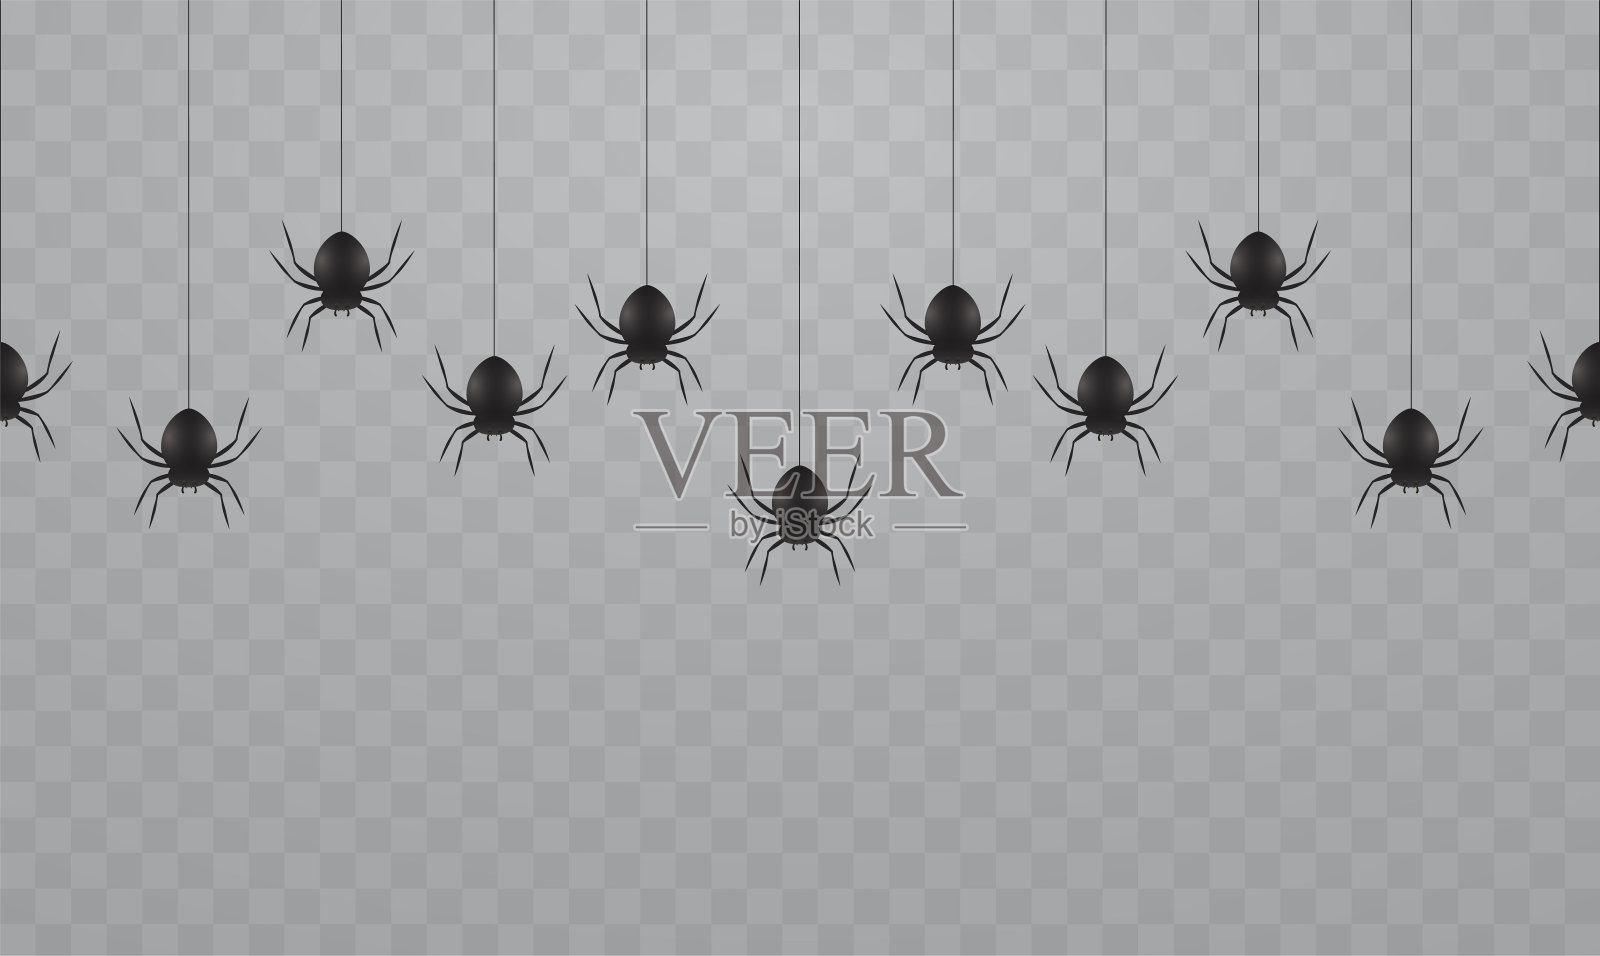 透明的背景上悬挂着黑色的蜘蛛。万圣节蜘蛛网上吓人的蜘蛛。插画图片素材